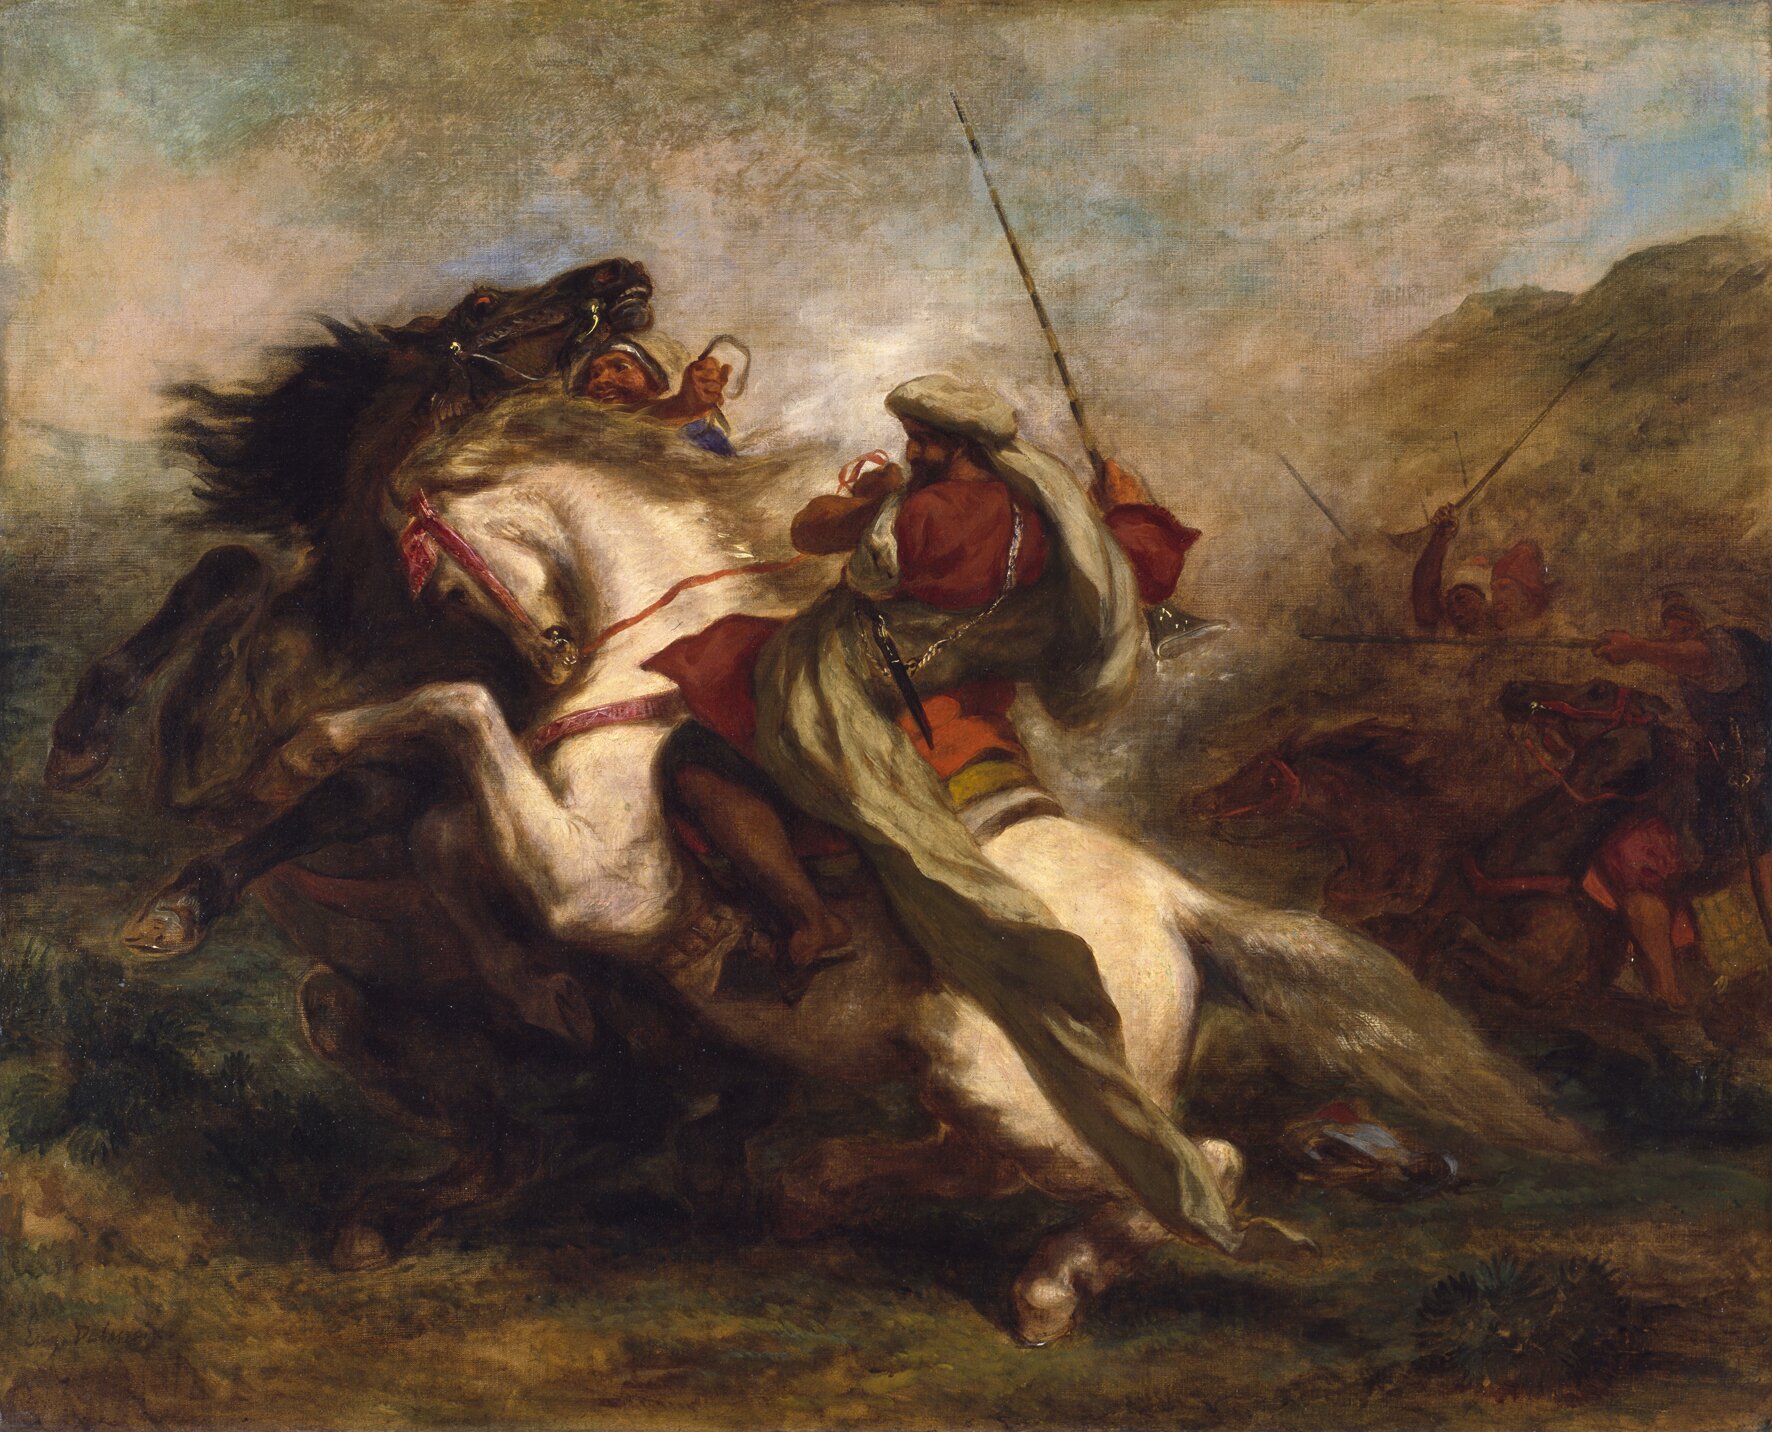 Obraz przedstawia scenę walki dwóch mężczyzn na koniach. Jeden z mężczyzn jedzie na białym koniu, drugi na karym. Mężczyźni walczą ze sobą wręcz. Unosi się nad nimi pył. W tle są także inni walczący.